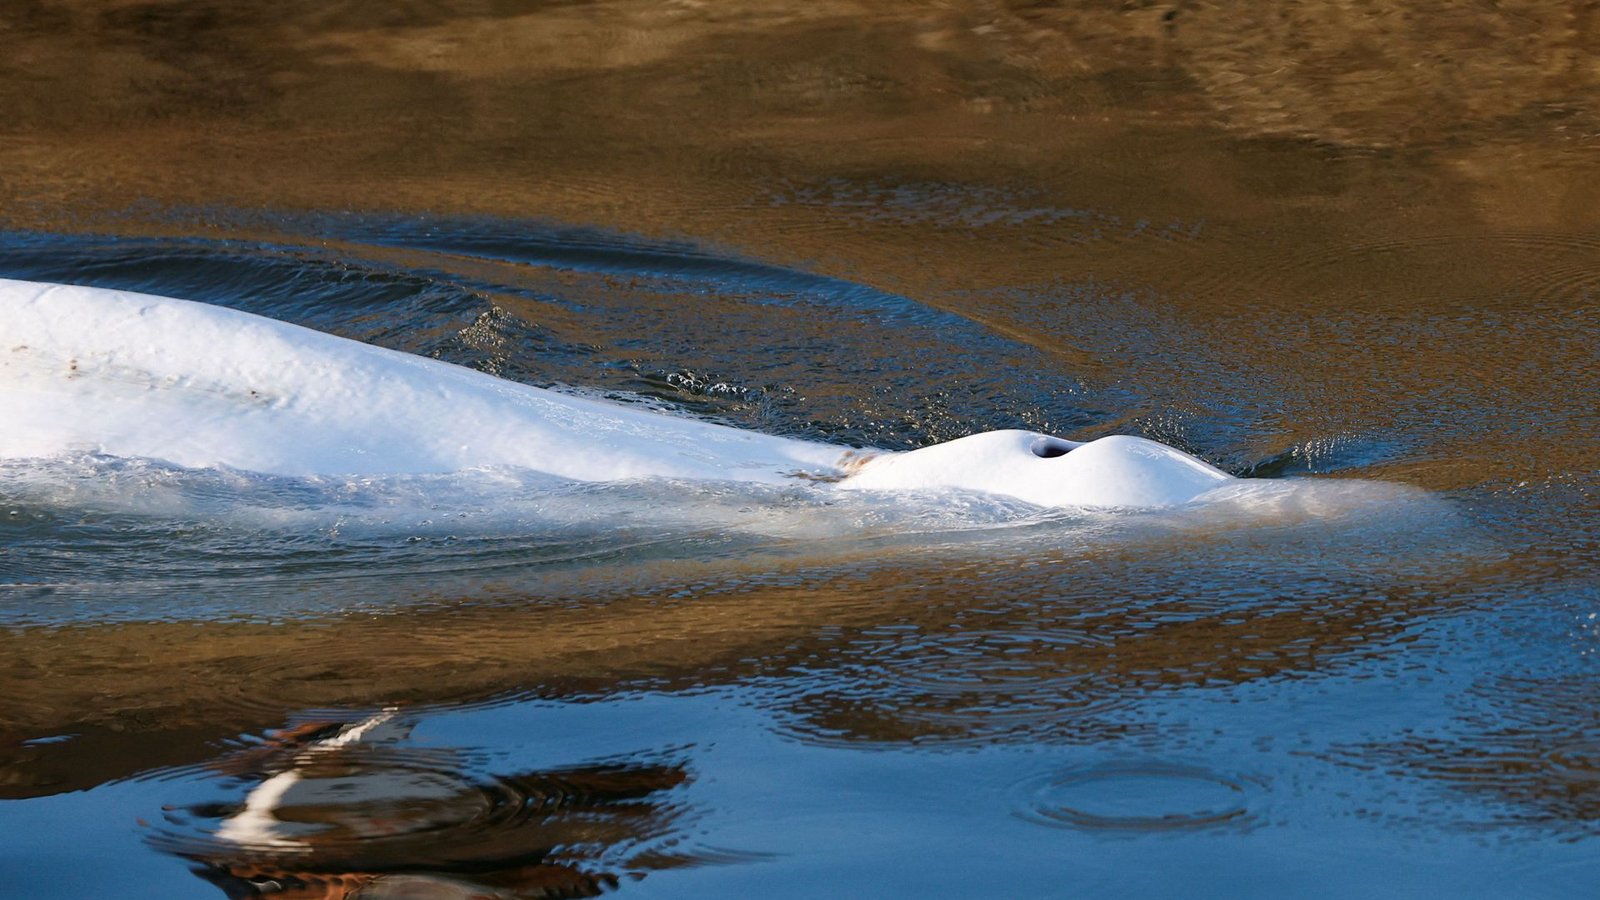 Der Beluga war am Wochenende rund 70 Kilometer von Paris entfernt in einer Flussschleuse lokalisiert worden.Foto: AFP/BENOIT TESSIER